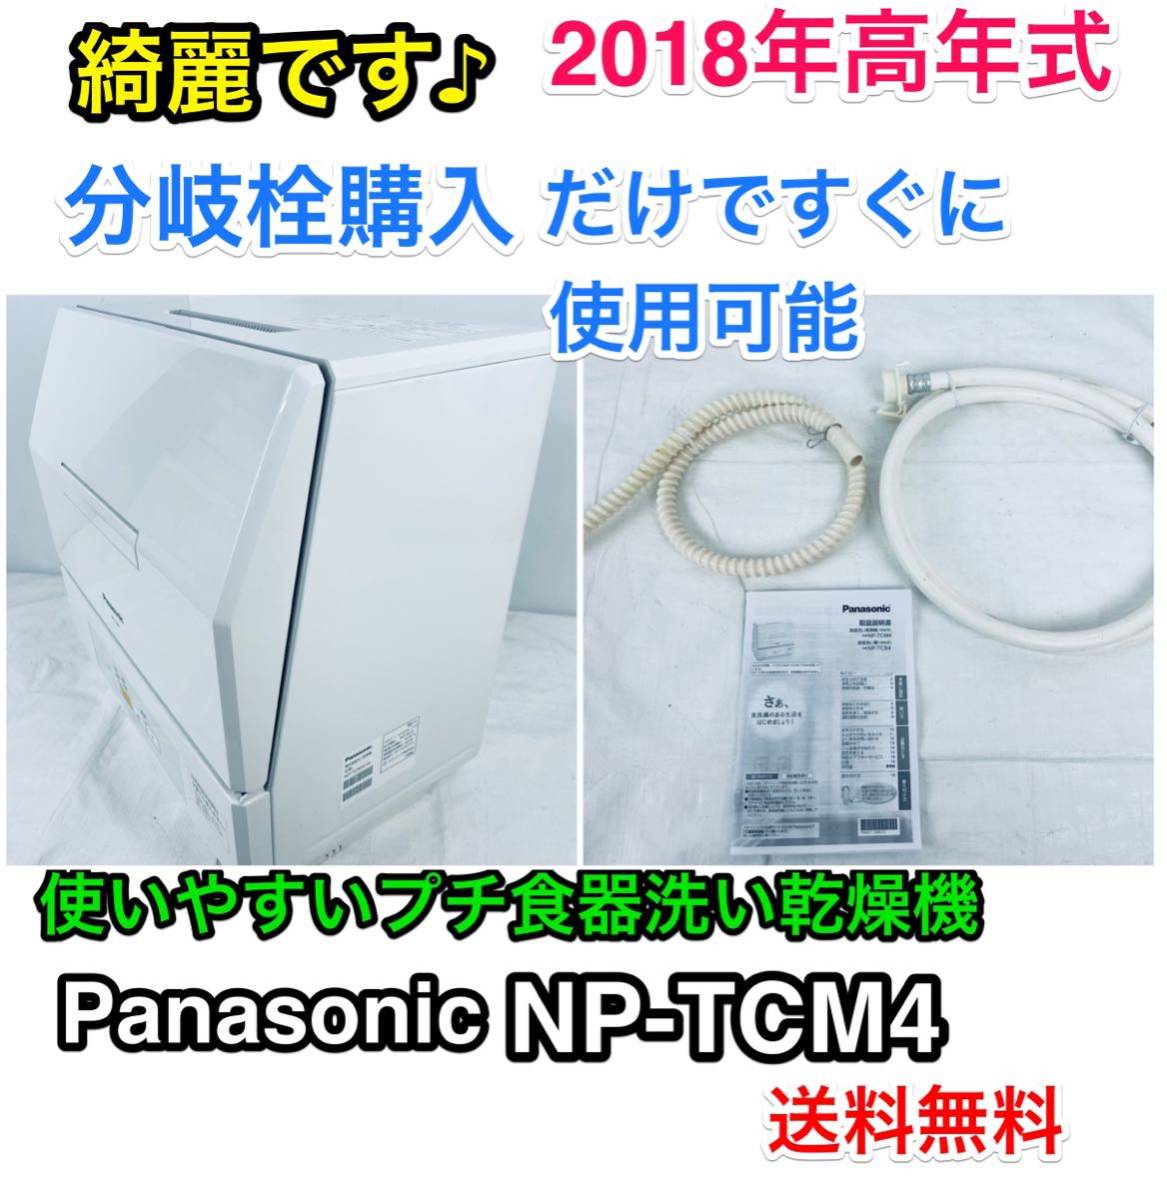 税込) Panasonic NP-TCM4-W 食洗器 食器洗い乾燥機 2018年製 